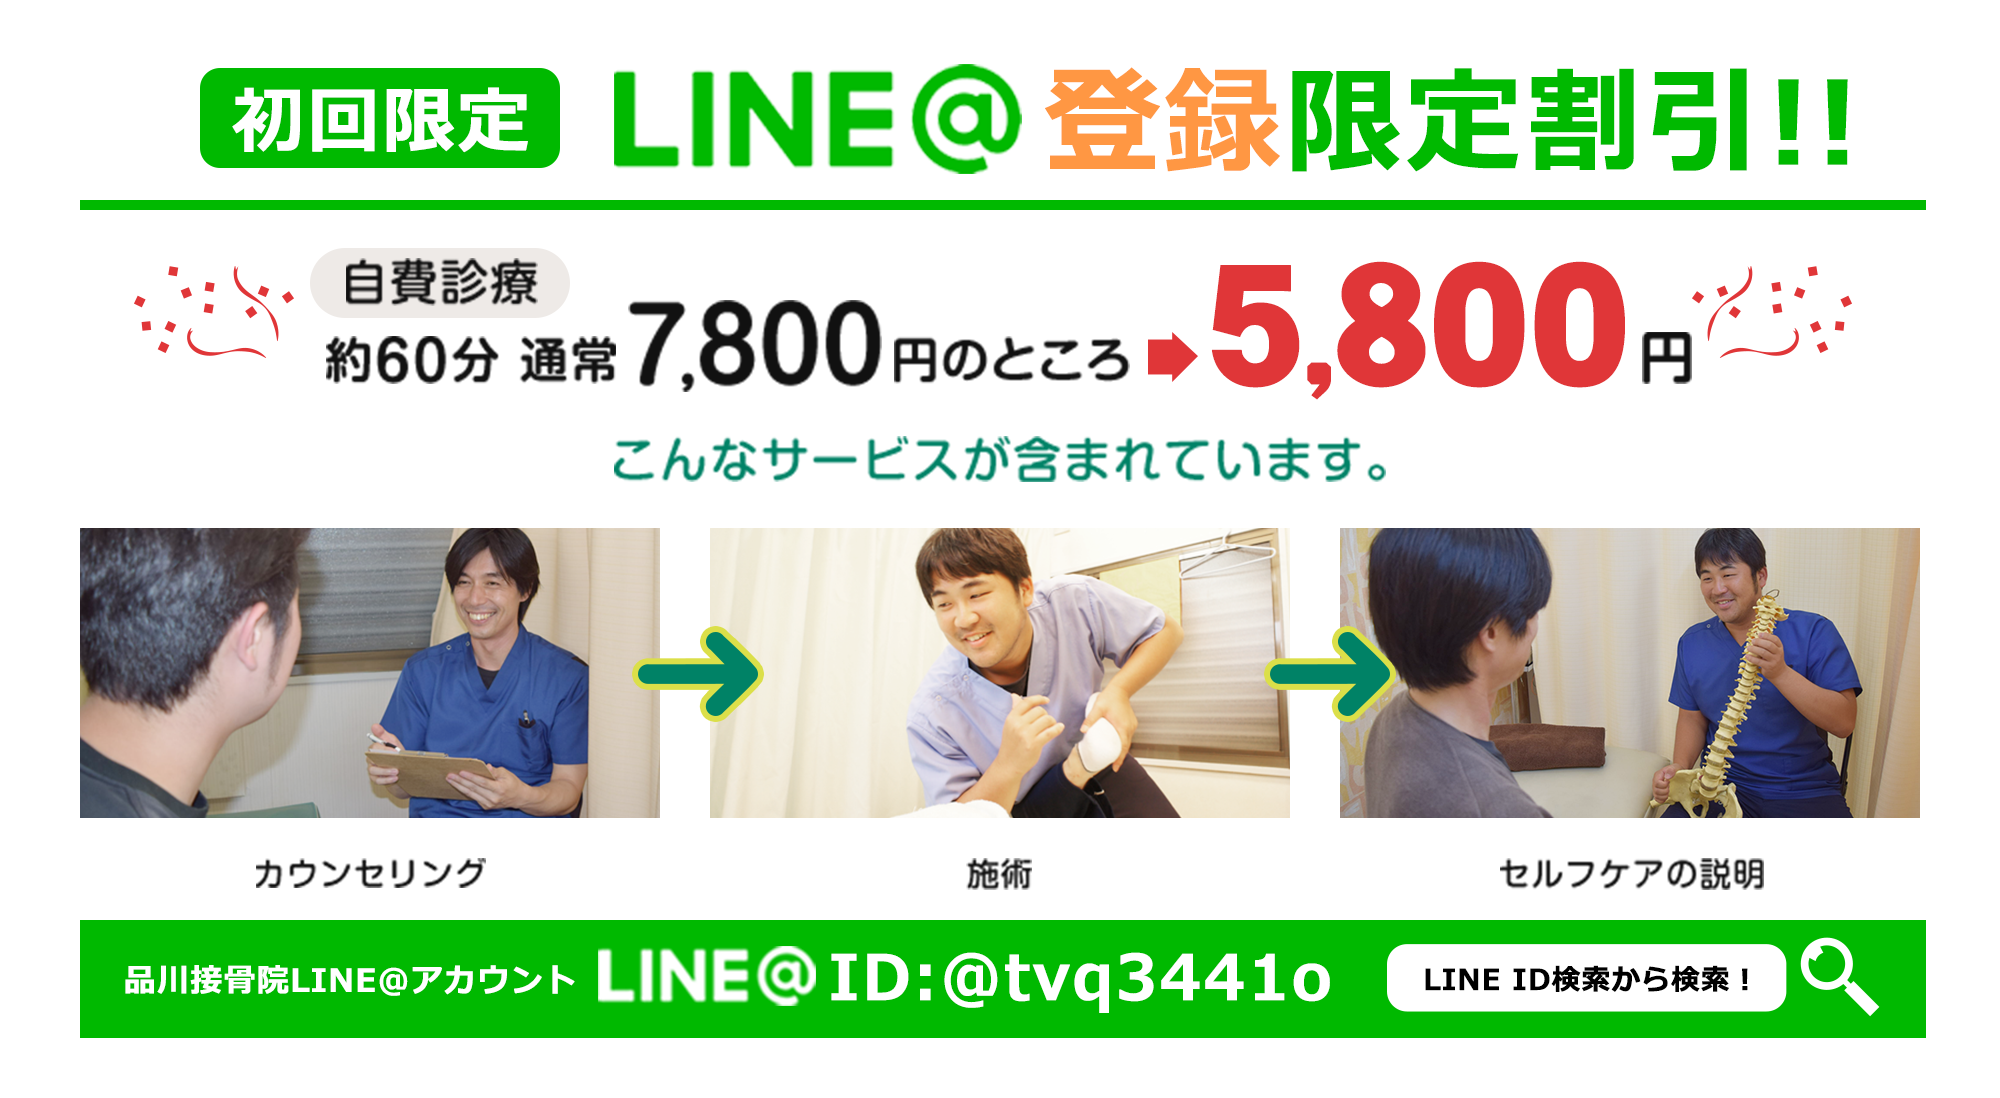 初回限定LINE@登録限定割引!!